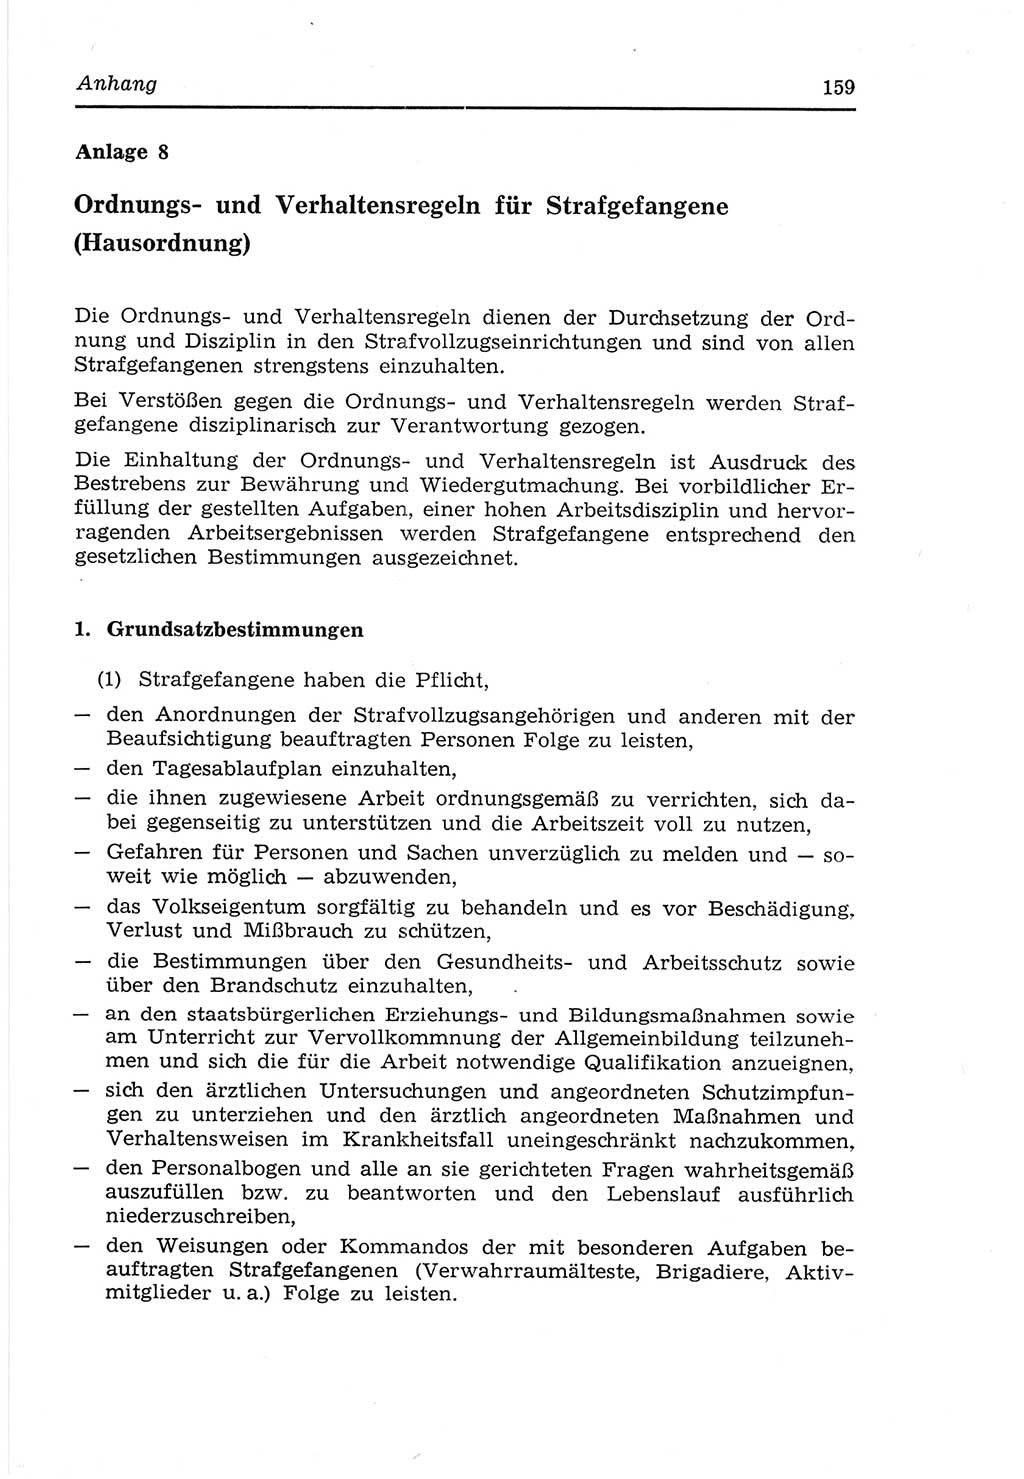 Strafvollzugs- und Wiedereingliederungsgesetz (SVWG) der Deutschen Demokratischen Republik (DDR) 1968, Seite 159 (SVWG DDR 1968, S. 159)